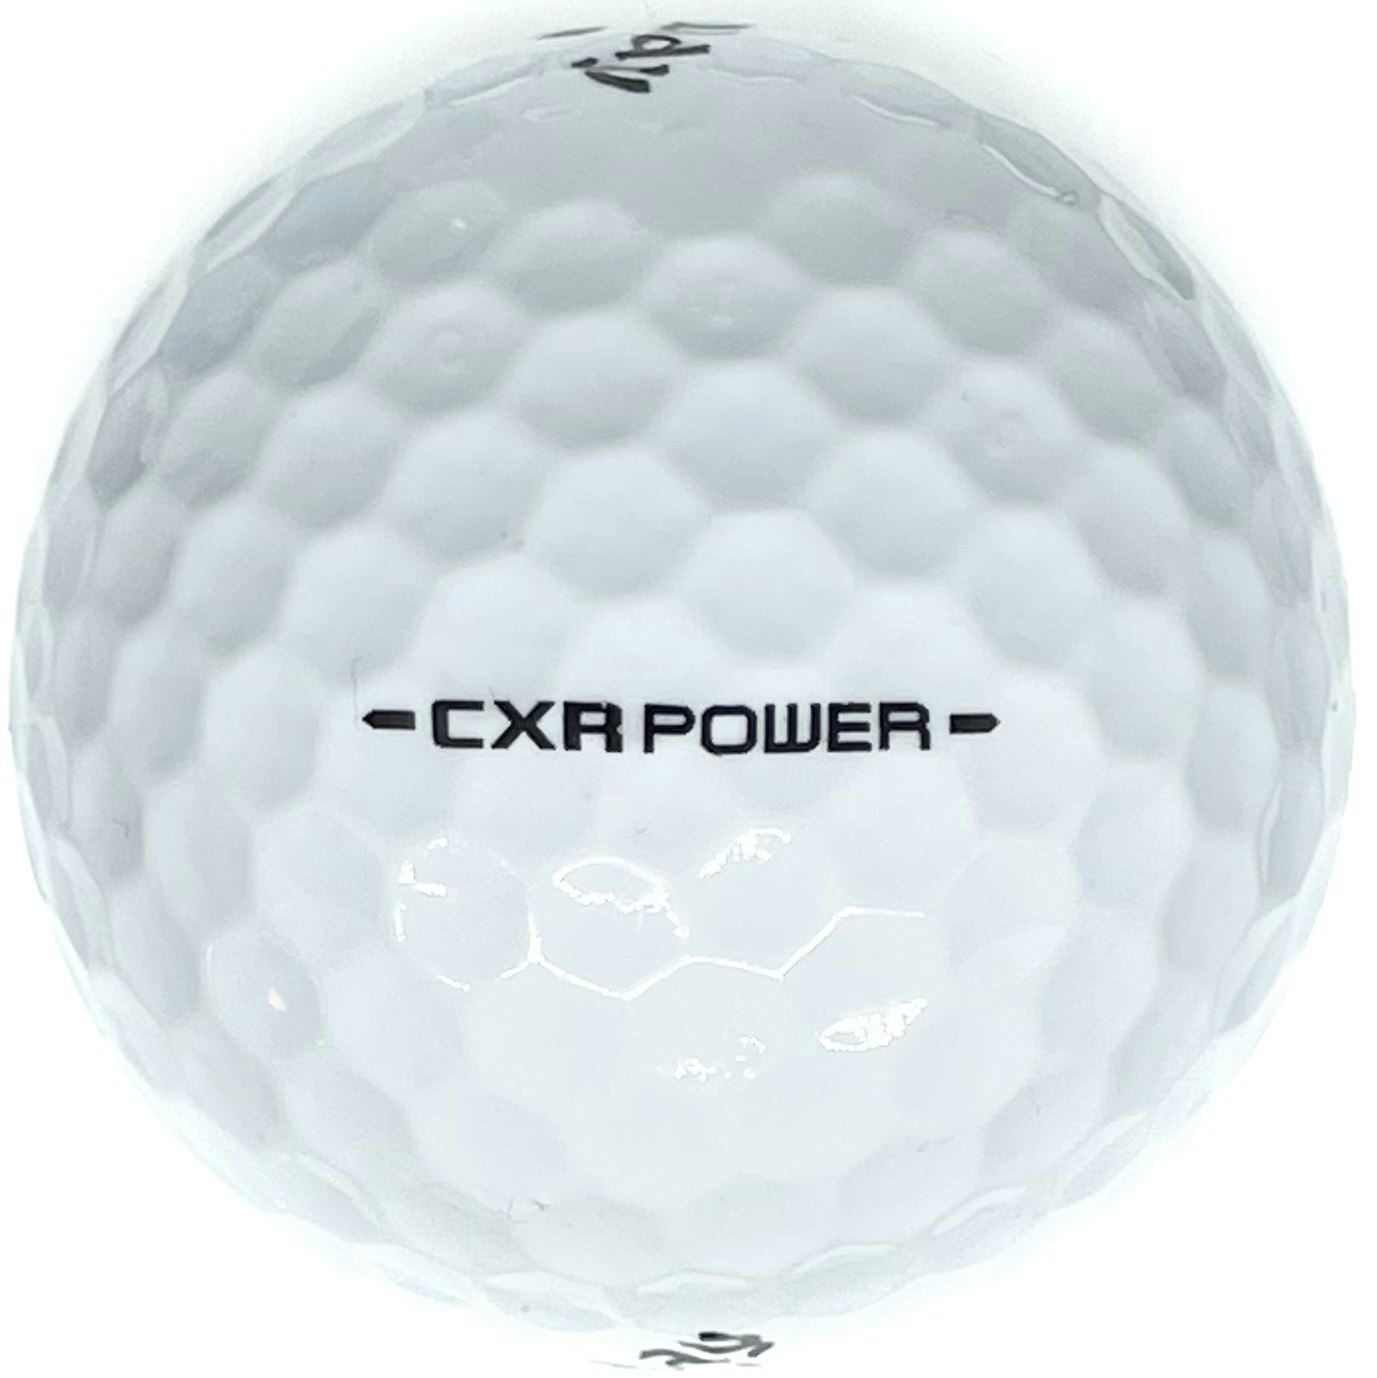 Detta är en vit golfboll, Callaway CXR Power